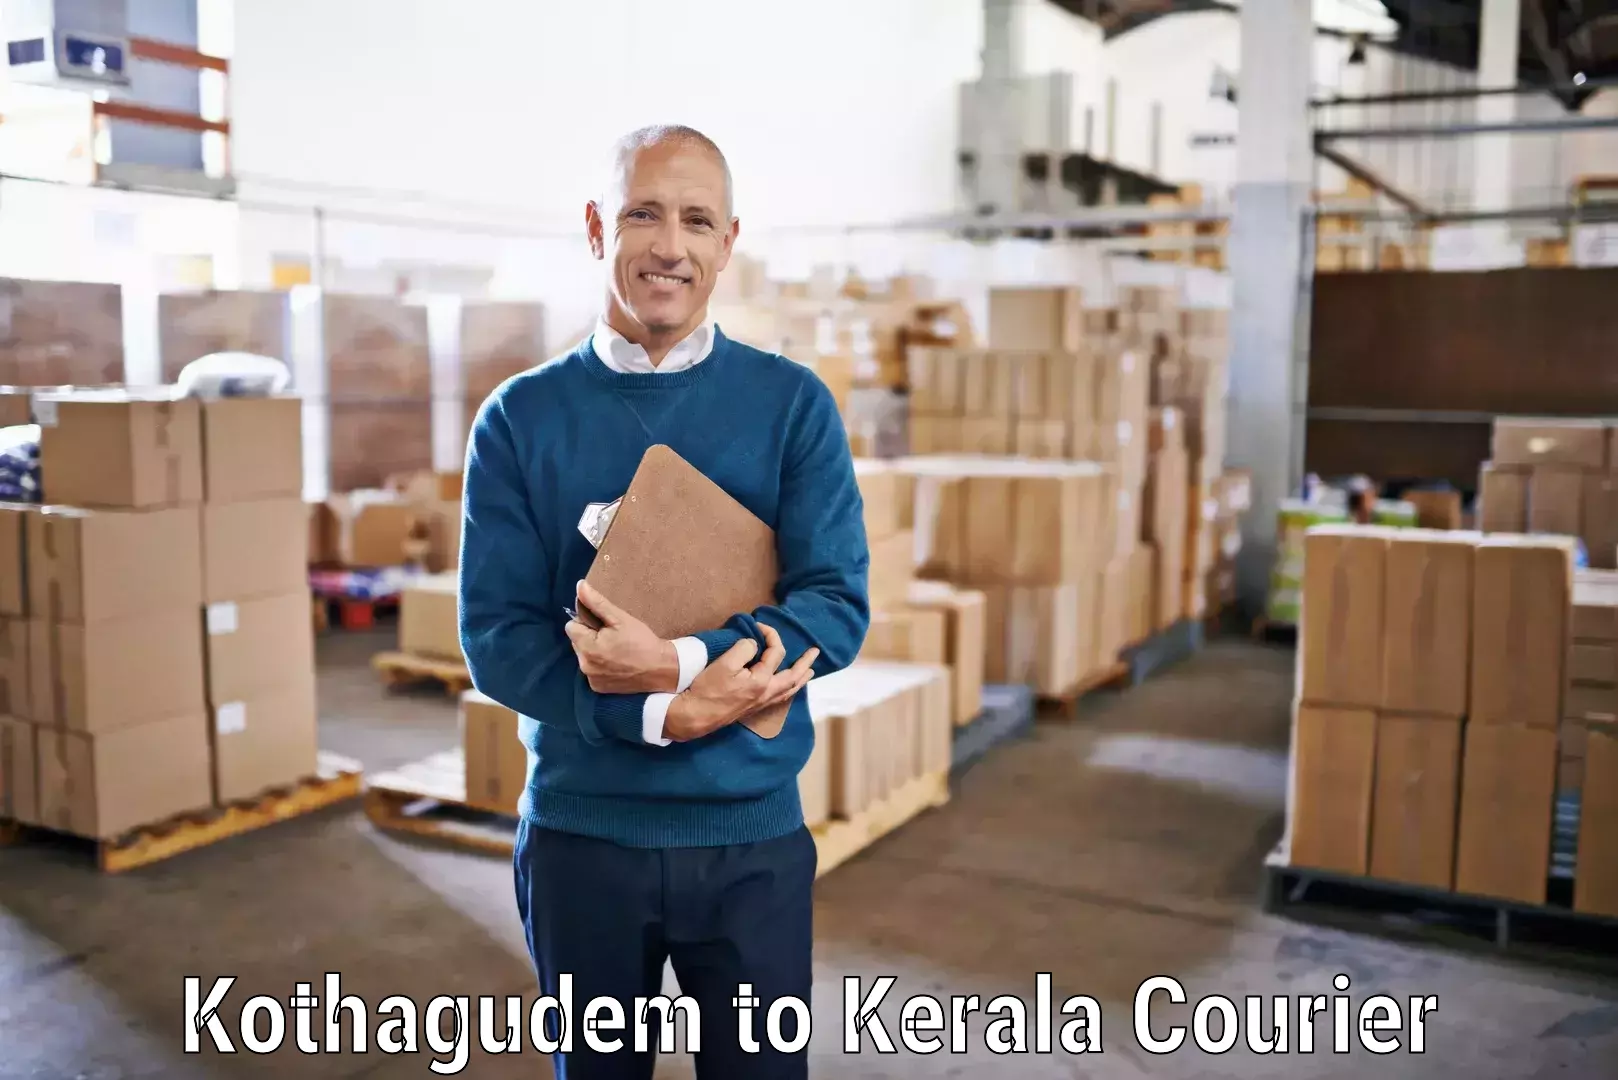 Courier service comparison Kothagudem to Kozhikode